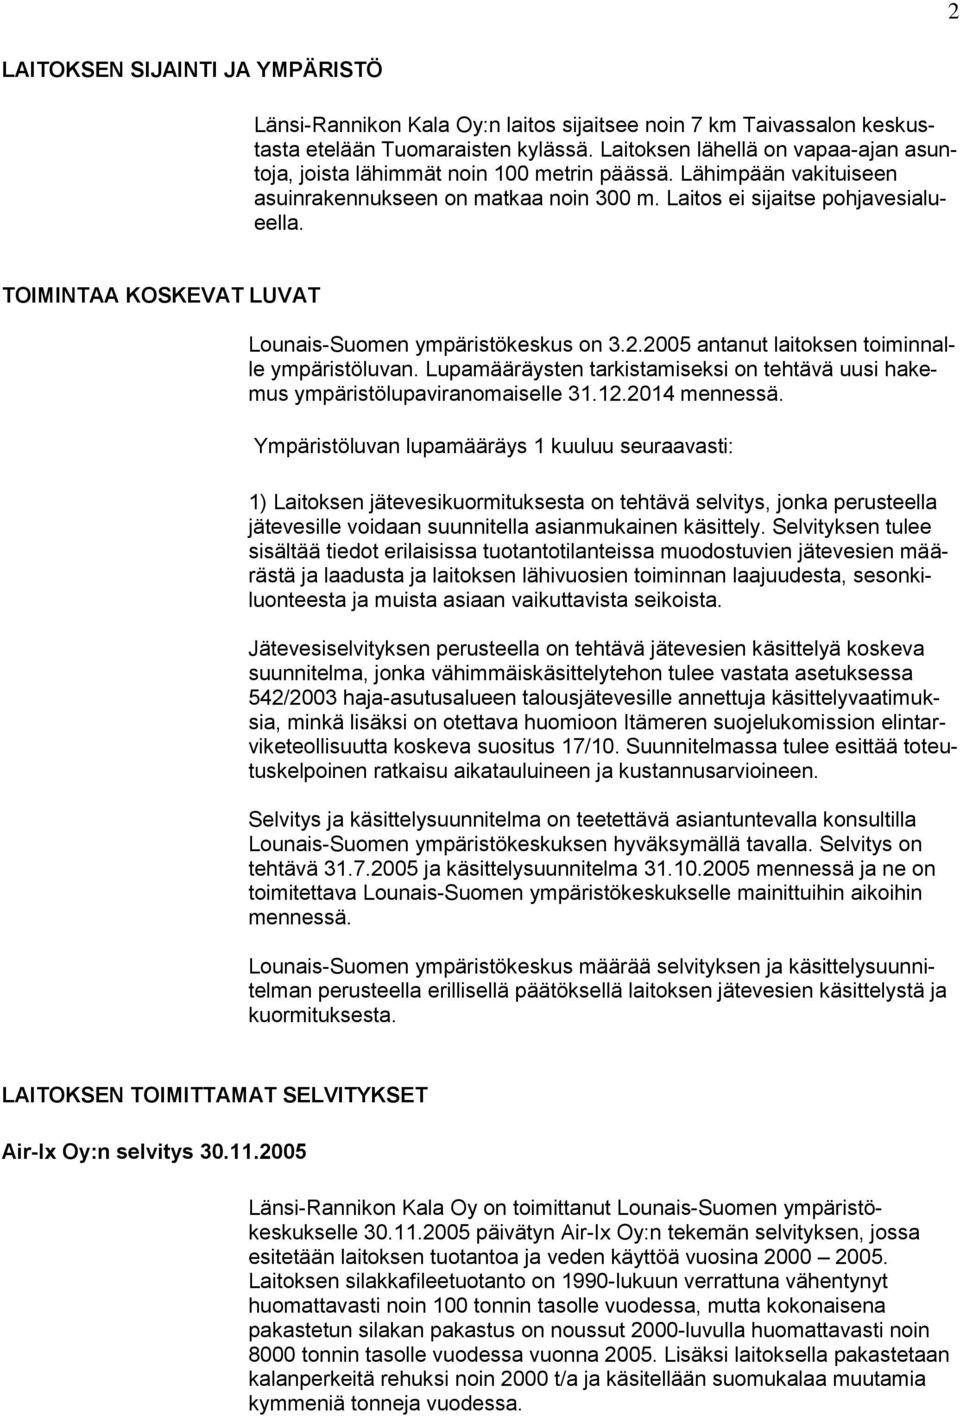 TOIMINTAA KOSKEVAT LUVAT Lounais-Suomen ympäristökeskus on 3.2.2005 antanut laitoksen toiminnalle ympäristöluvan. Lupamääräysten tarkistamiseksi on tehtävä uusi hakemus ympäristölupaviranomaiselle 31.